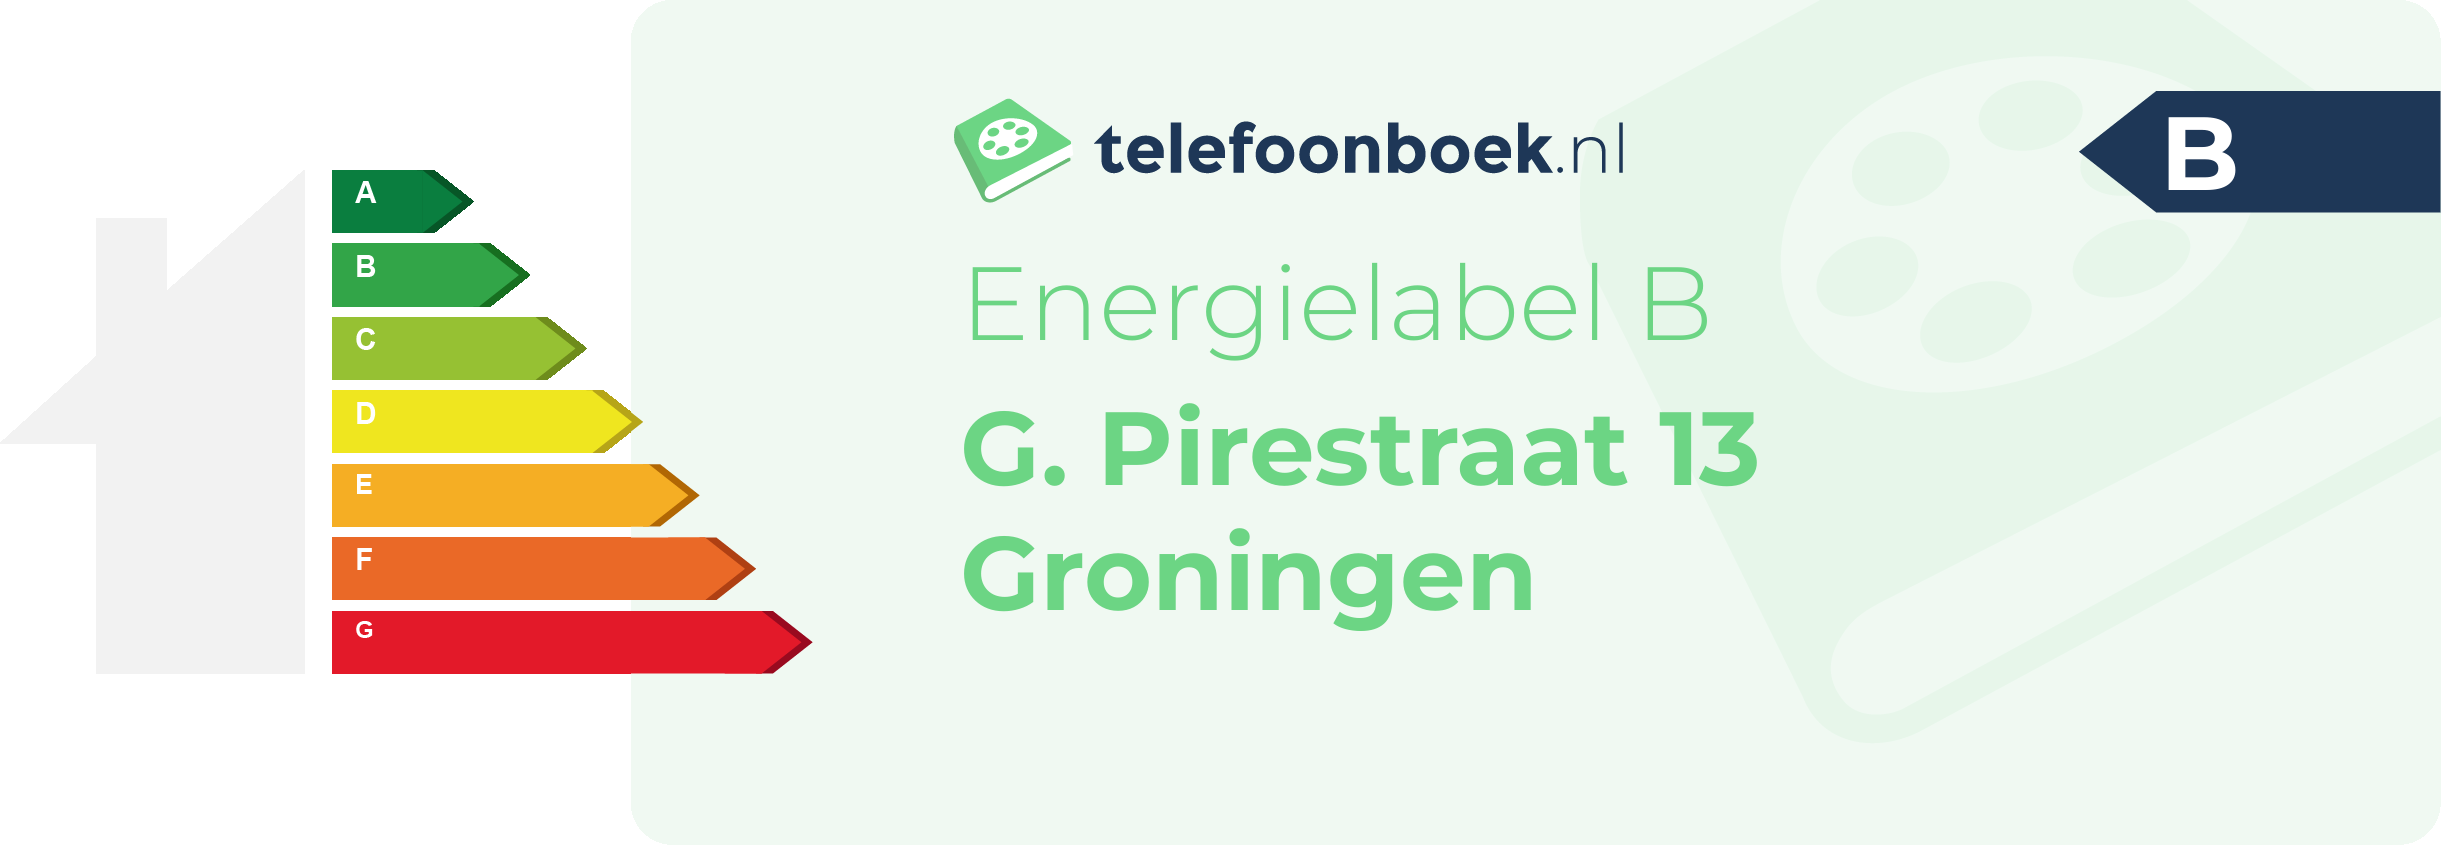 Energielabel G. Pirestraat 13 Groningen